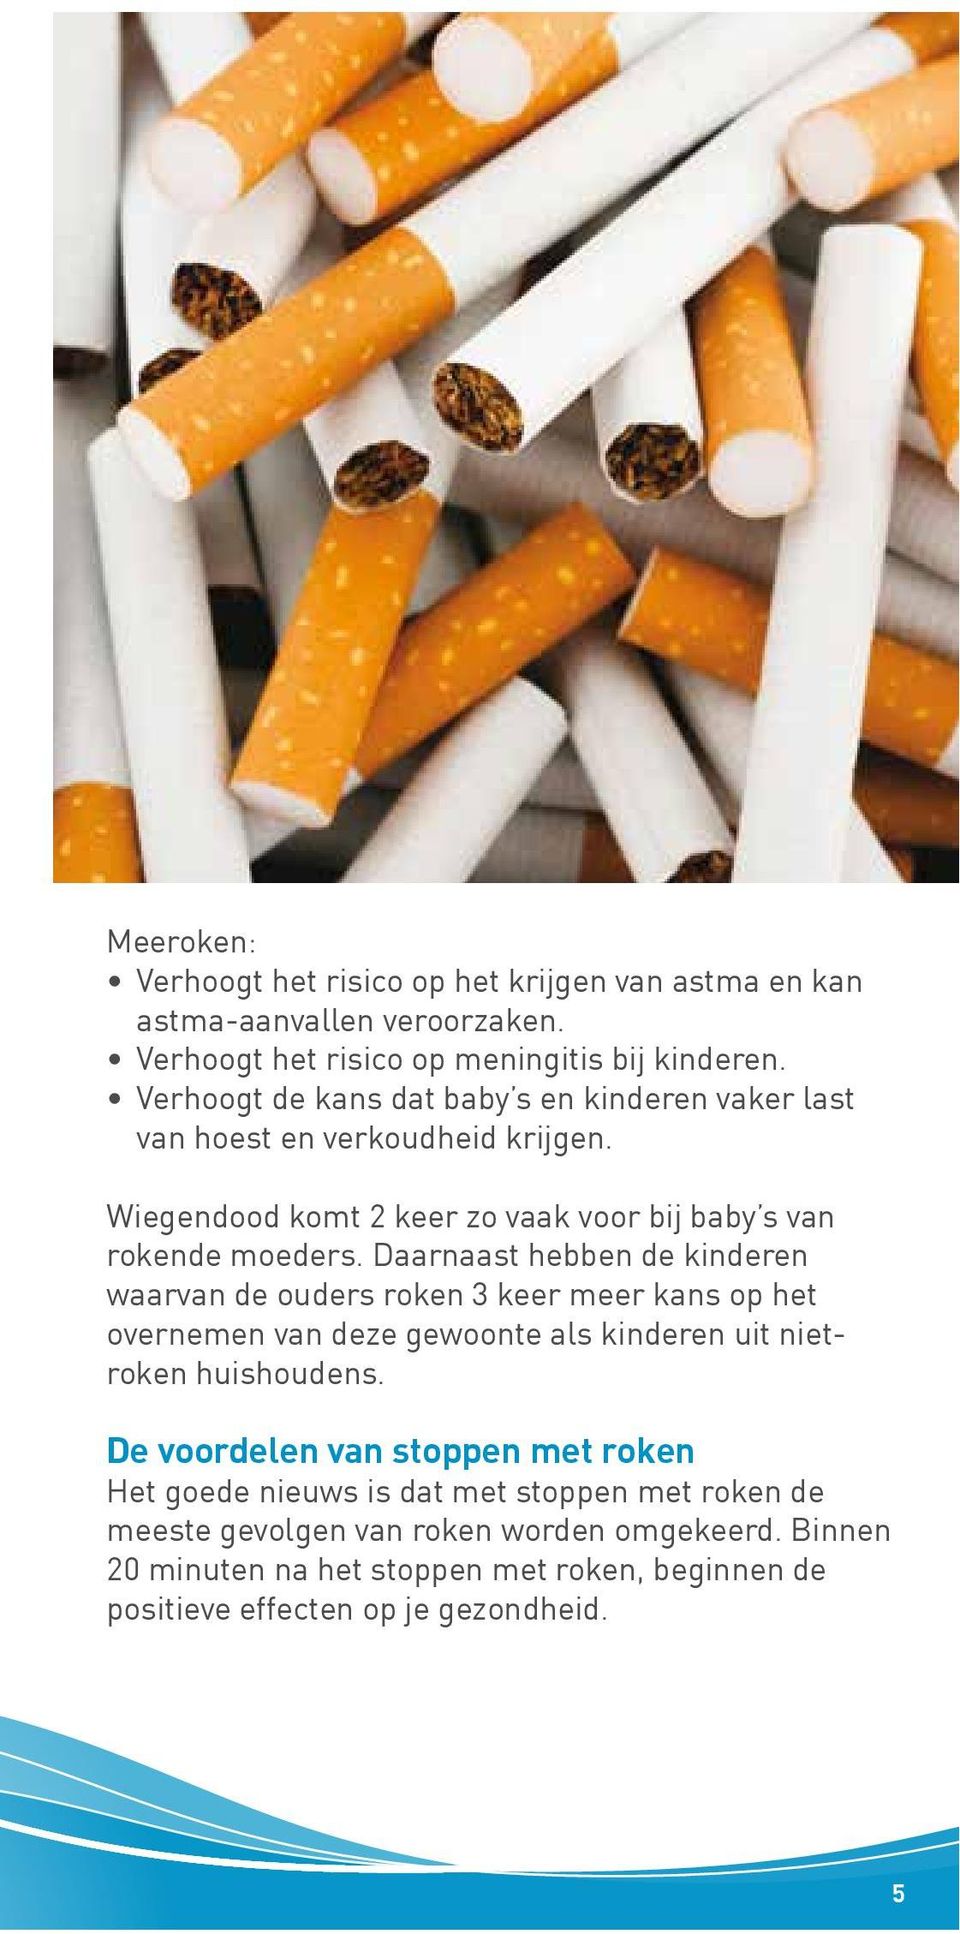 Daarnaast hebben de kinderen waarvan de ouders roken 3 keer meer kans op het overnemen van deze gewoonte als kinderen uit nietroken huishoudens.